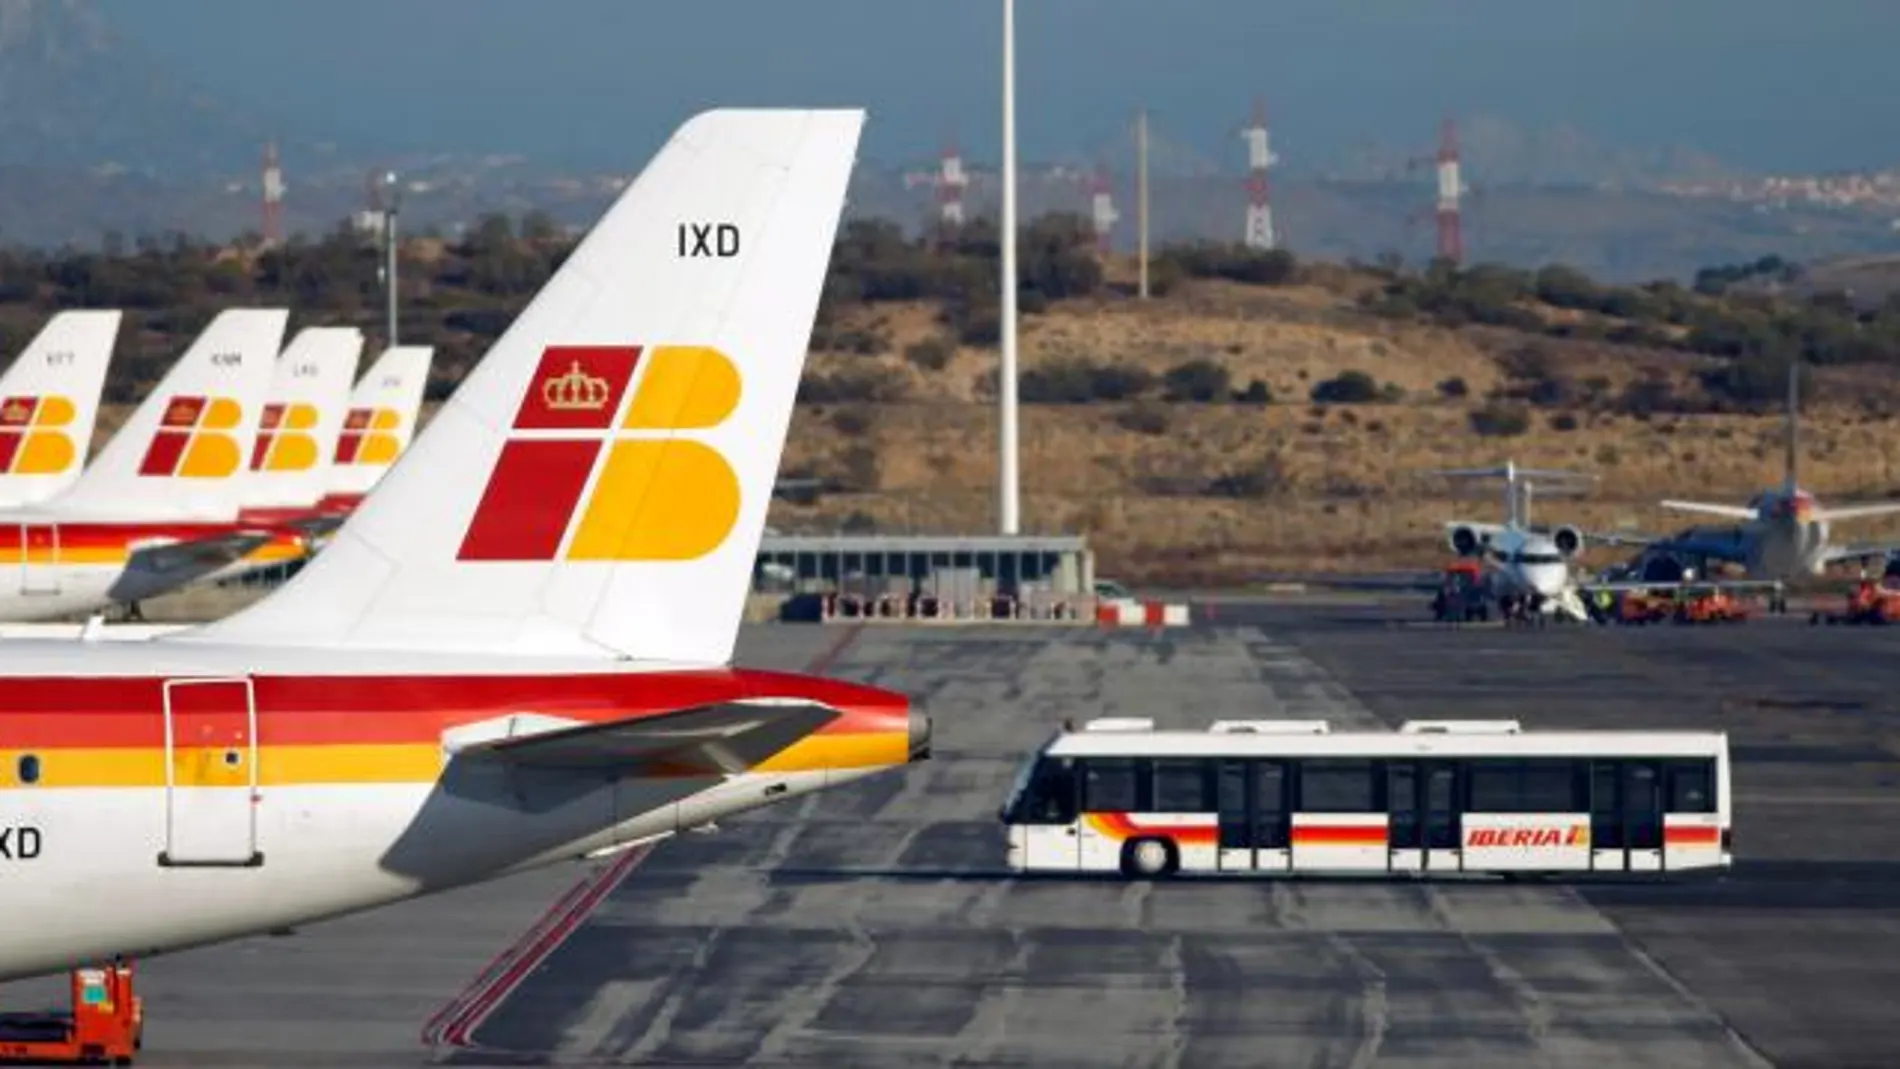 Sindicatos de vuelo y tierra de Iberia convocan huelga el 13 de febrero